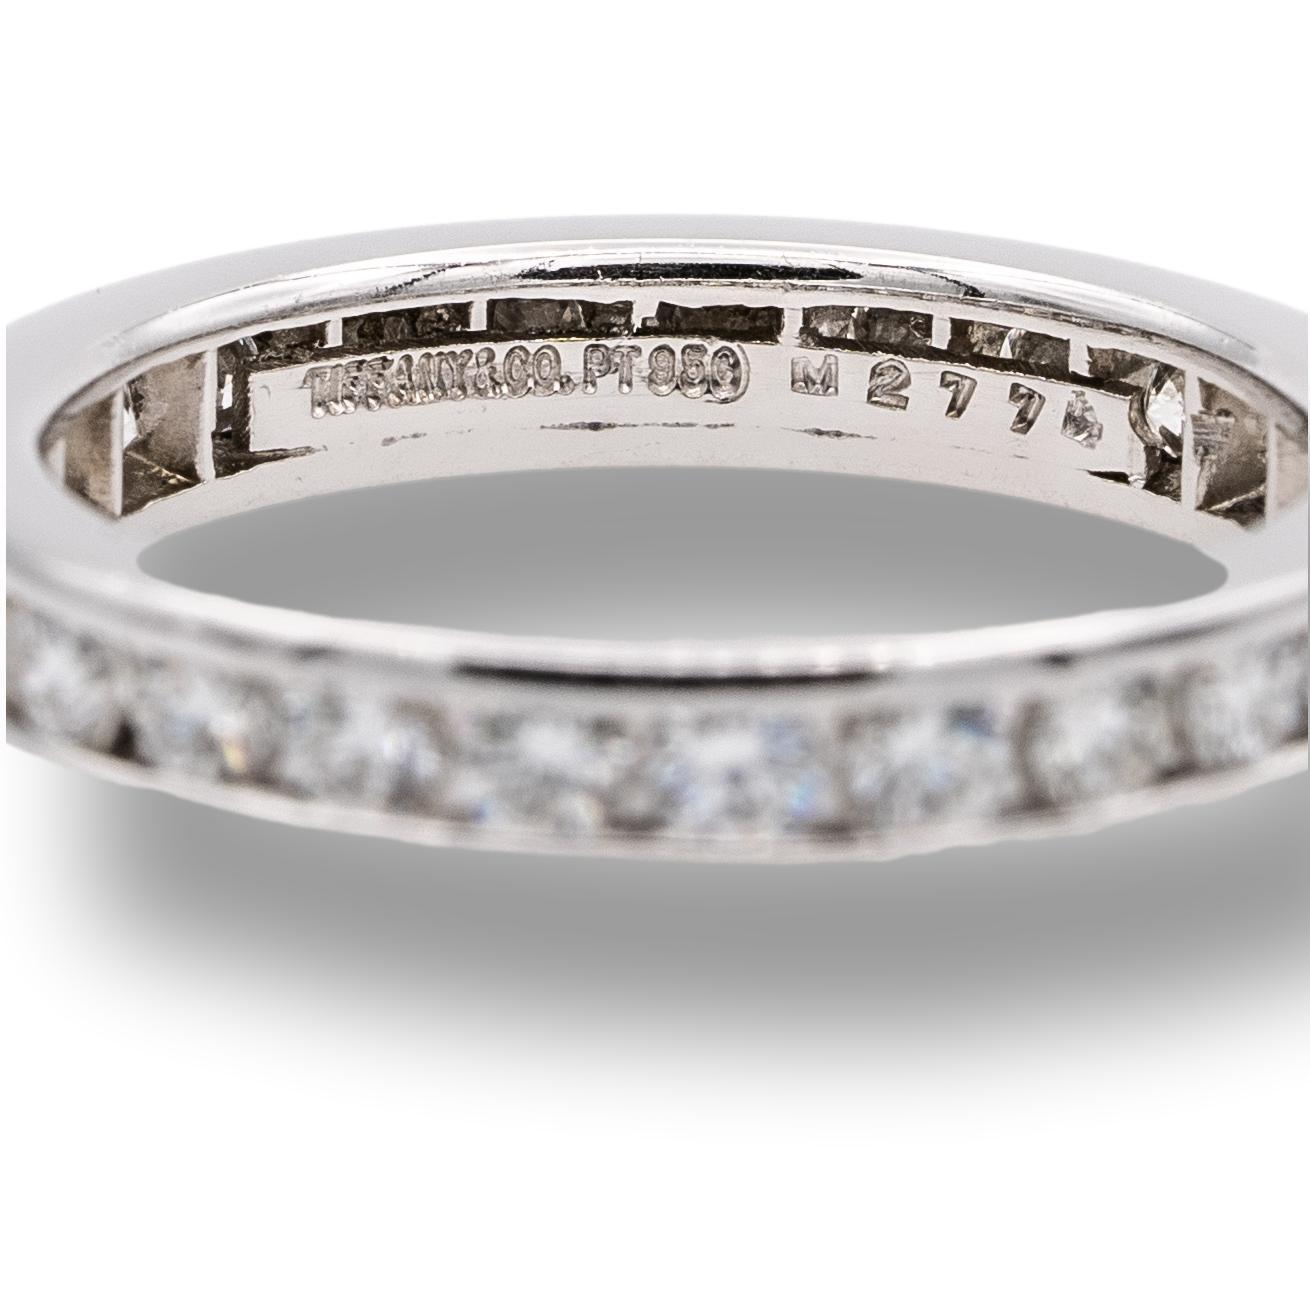 Ehering von Tiffany & Co. aus Platin mit 25 runden Diamanten im Brillantschliff mit einem Gesamtgewicht von ca. 0,93 Karat, die rundherum in einer Kanalfassung gefasst sind. Der Ring ist 3 mm breit. 

Marke: Tiffany & Co.

Punzierungen: Tiffany &